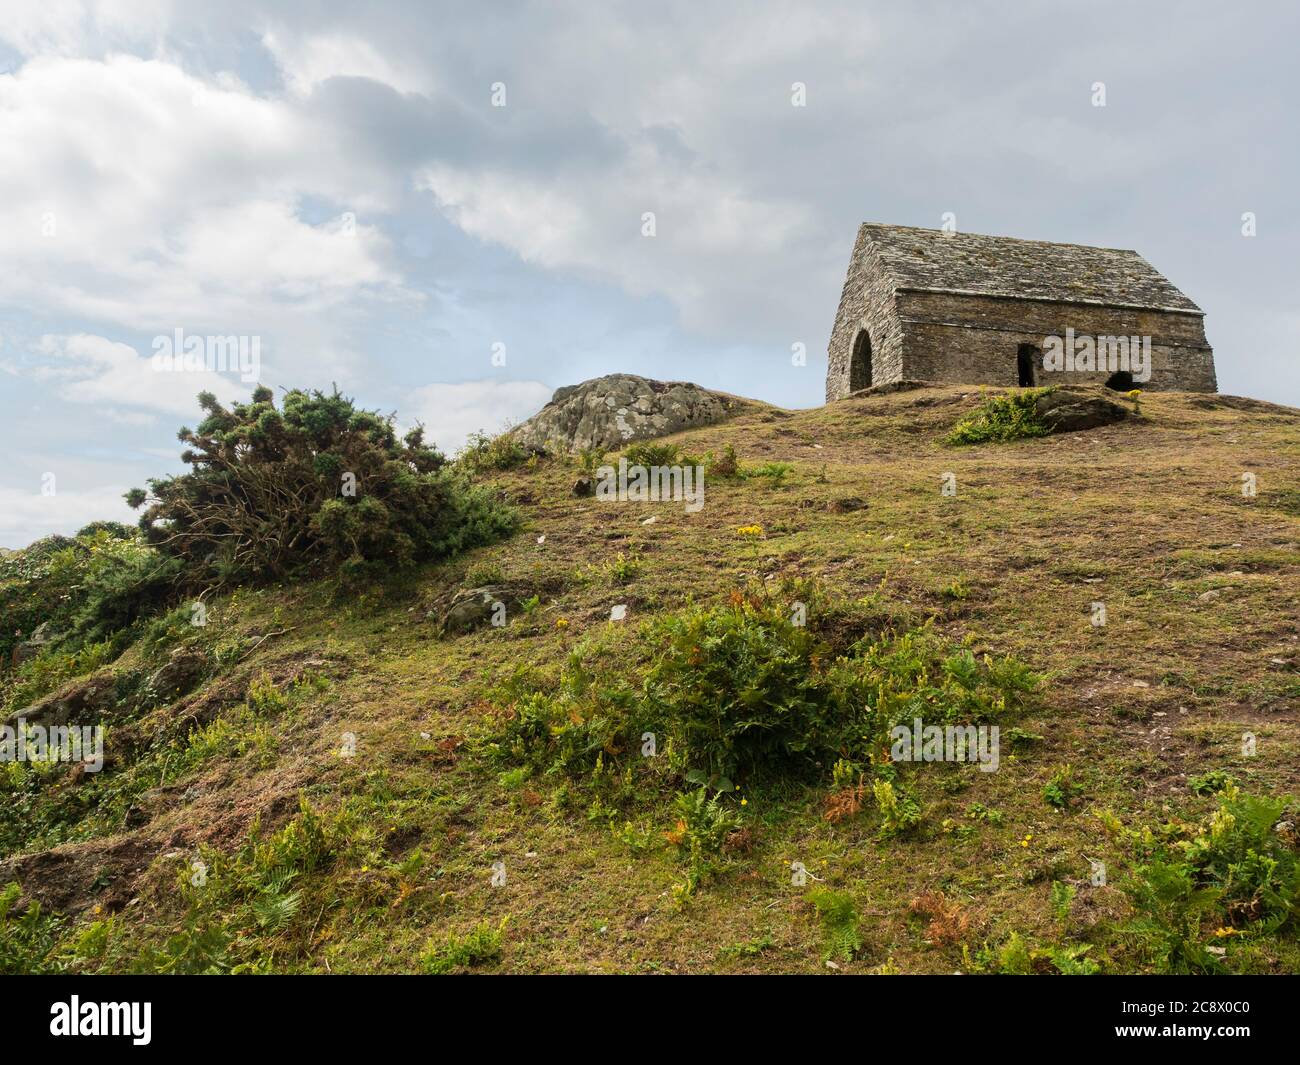 La chapelle Saint-Michel, située sur Rame Head, en Cornouailles, se dresse sur le point culminant de la péninsule de Rame, une région d'une beauté naturelle exceptionnelle Banque D'Images